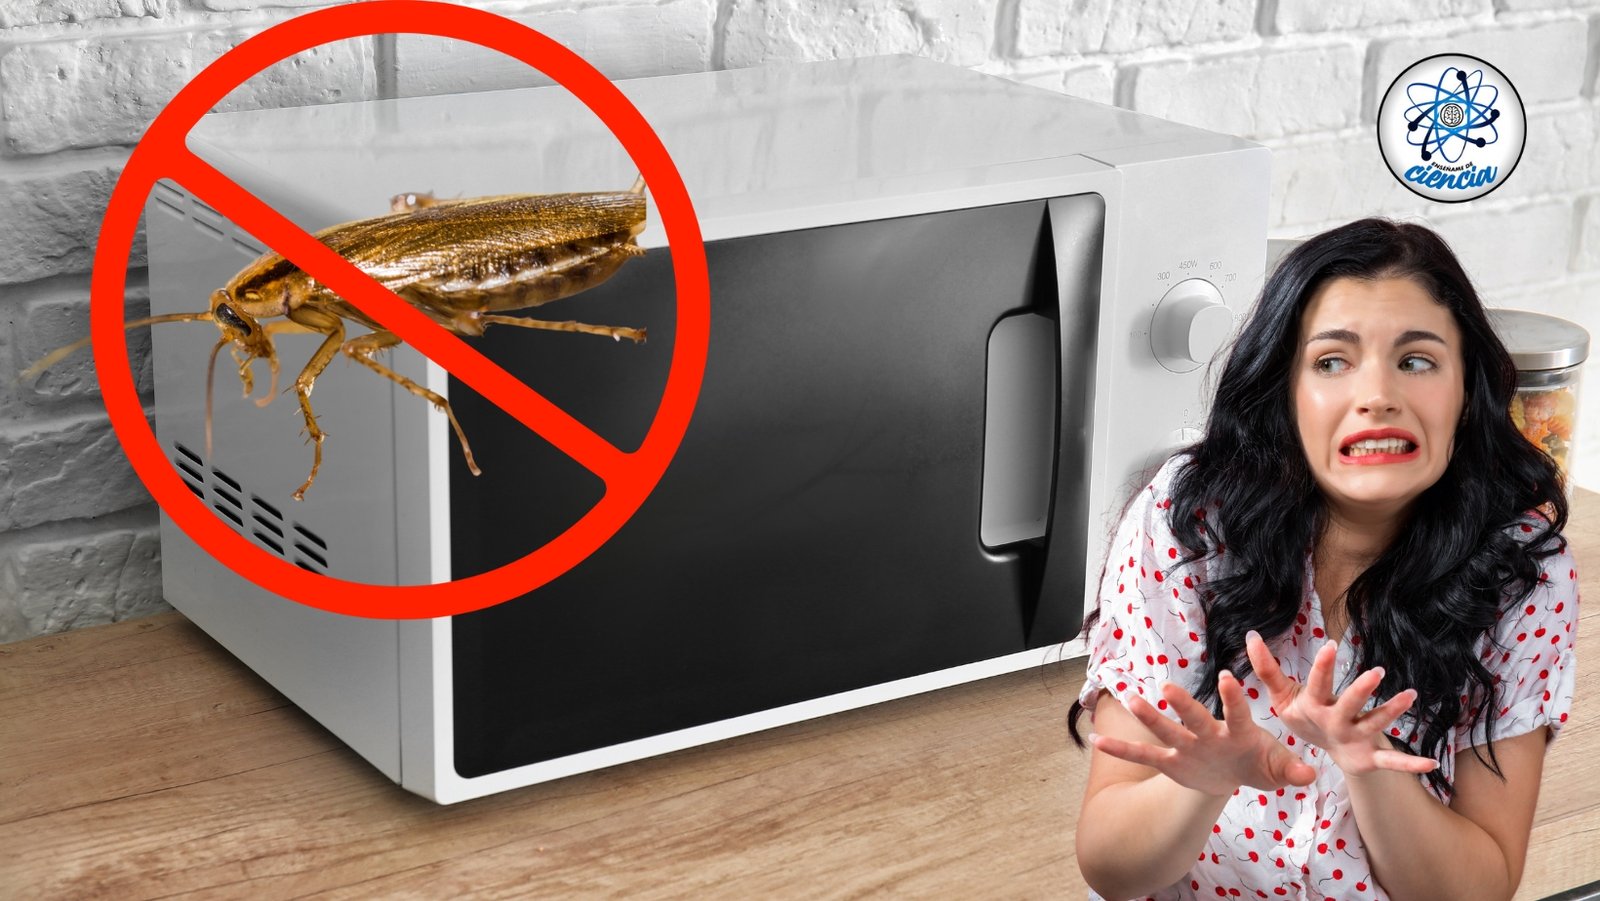 Elimina las cucarachas del microondas con trucos efectivos